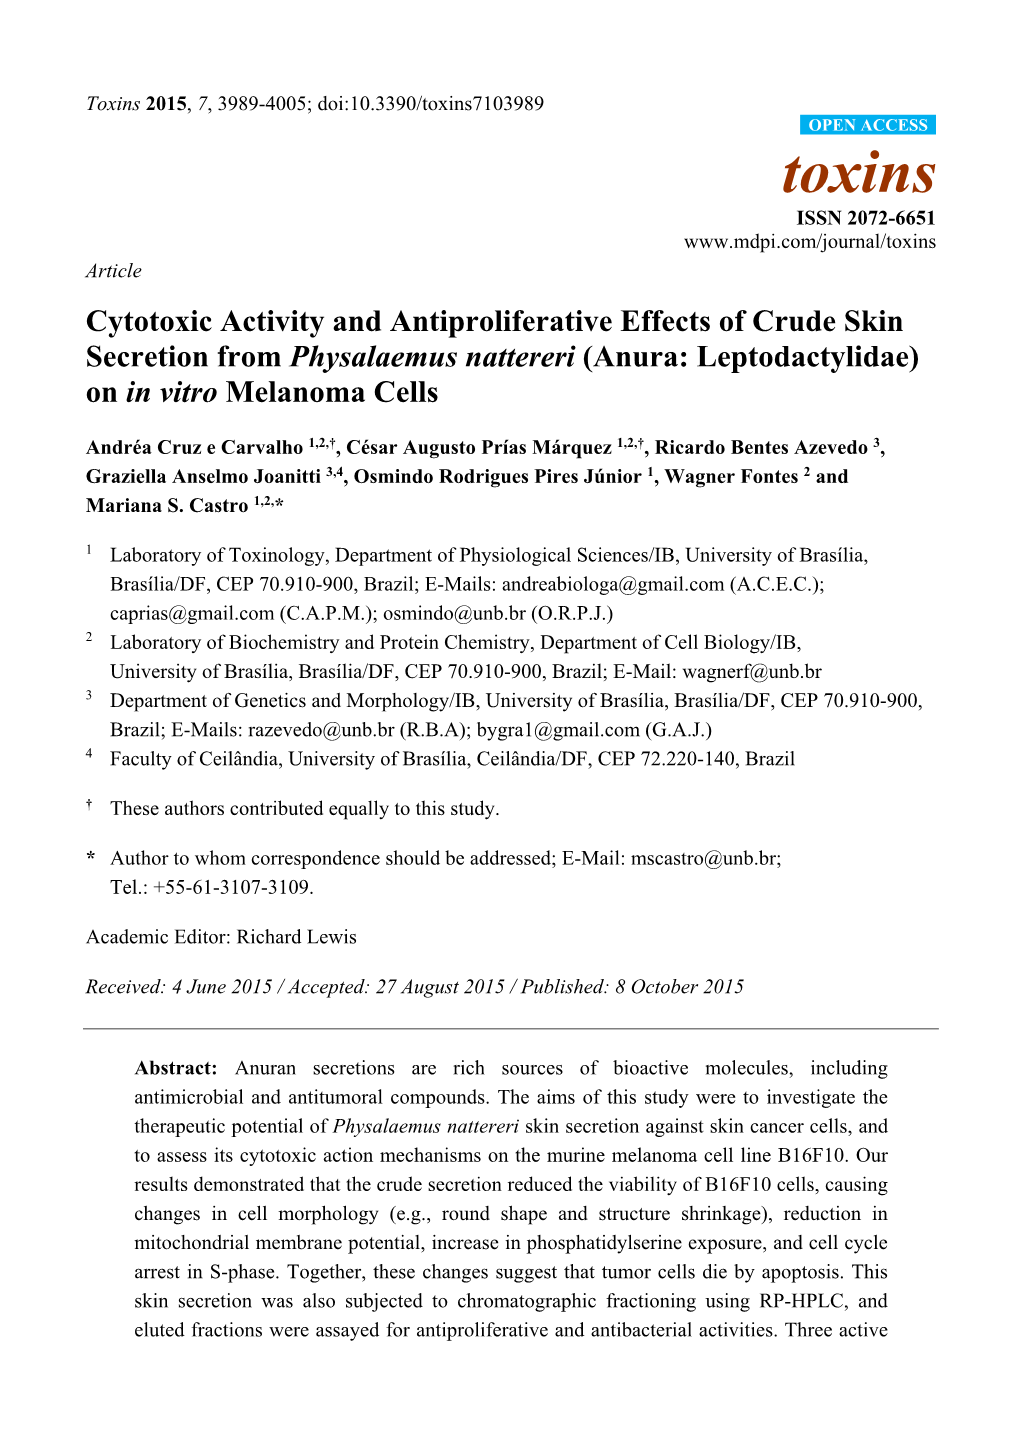 Cytotoxic Activity and Antiproliferative Effects of Crude Skin Secretion from Physalaemus Nattereri (Anura: Leptodactylidae) on in Vitro Melanoma Cells